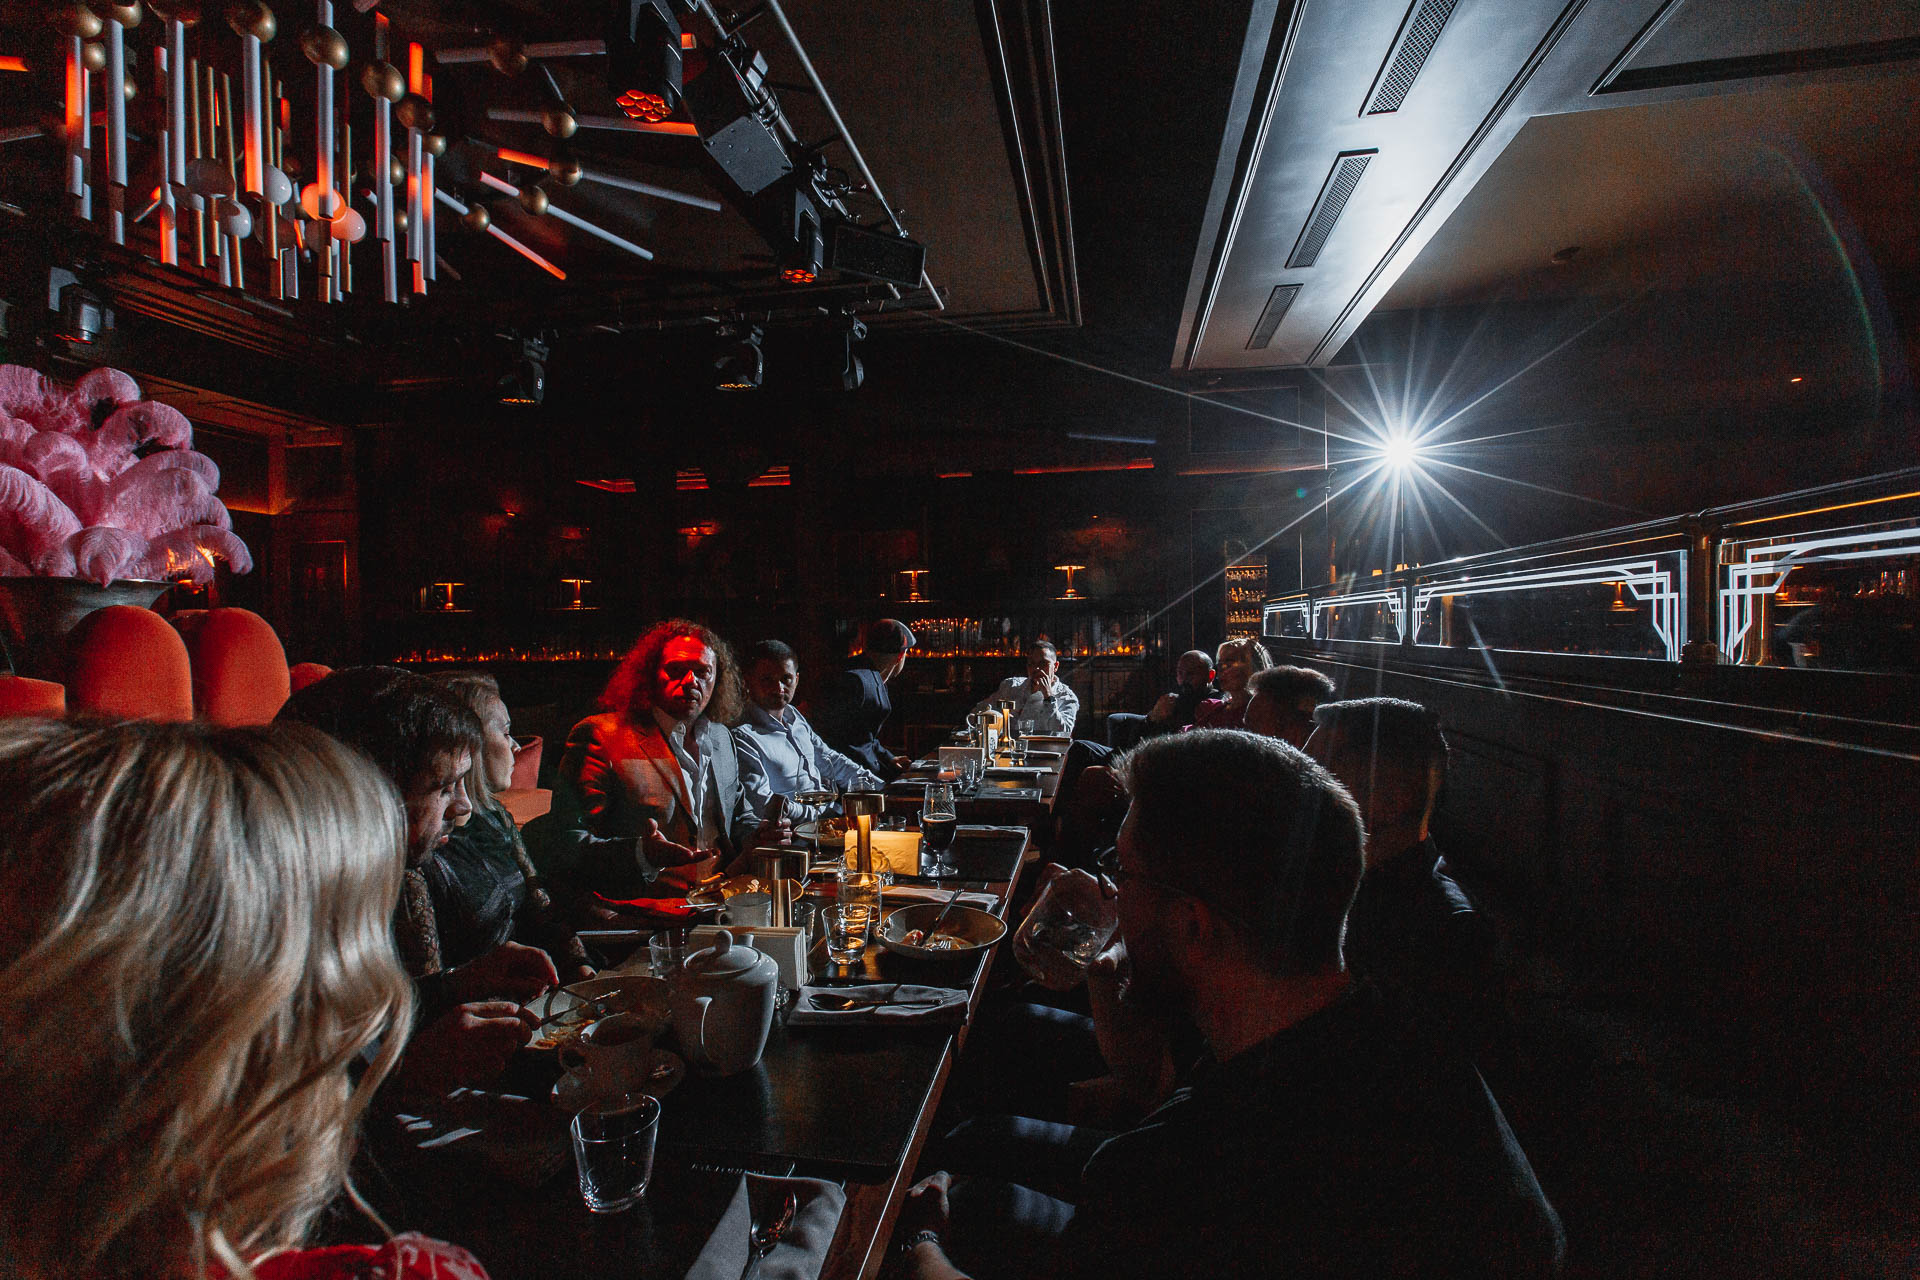 Атмосферная и тускло освещенная модная сцена ресторана, где посетители сидят за столиками, наслаждаясь напитками и беседами